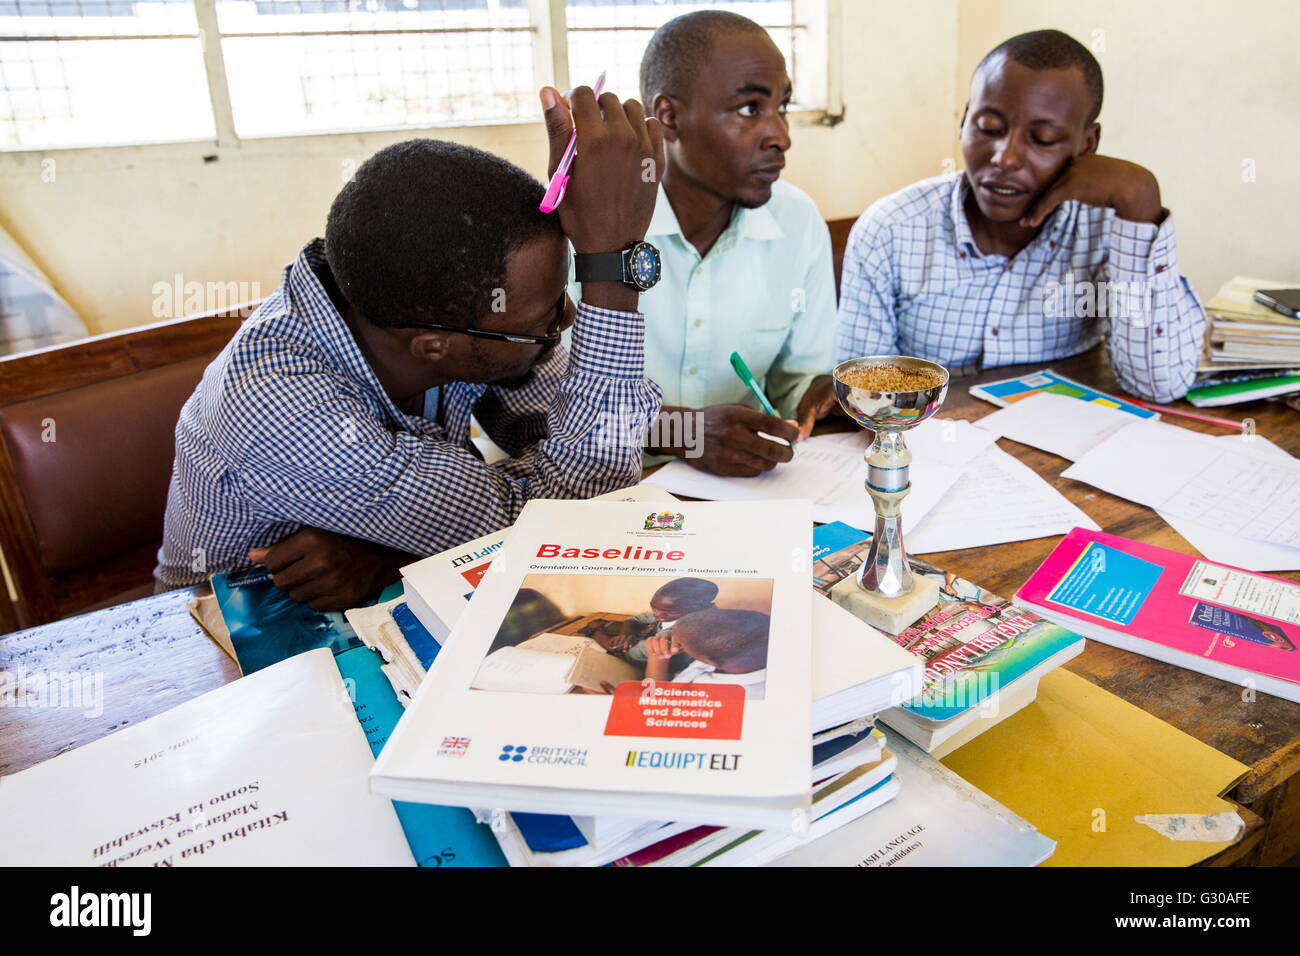 Enseignant les discussions dans le cadre d'une session de formation à l'école pour améliorer les méthodes d'enseignement, l'école Angaza, Lindi, Tanzanie Banque D'Images